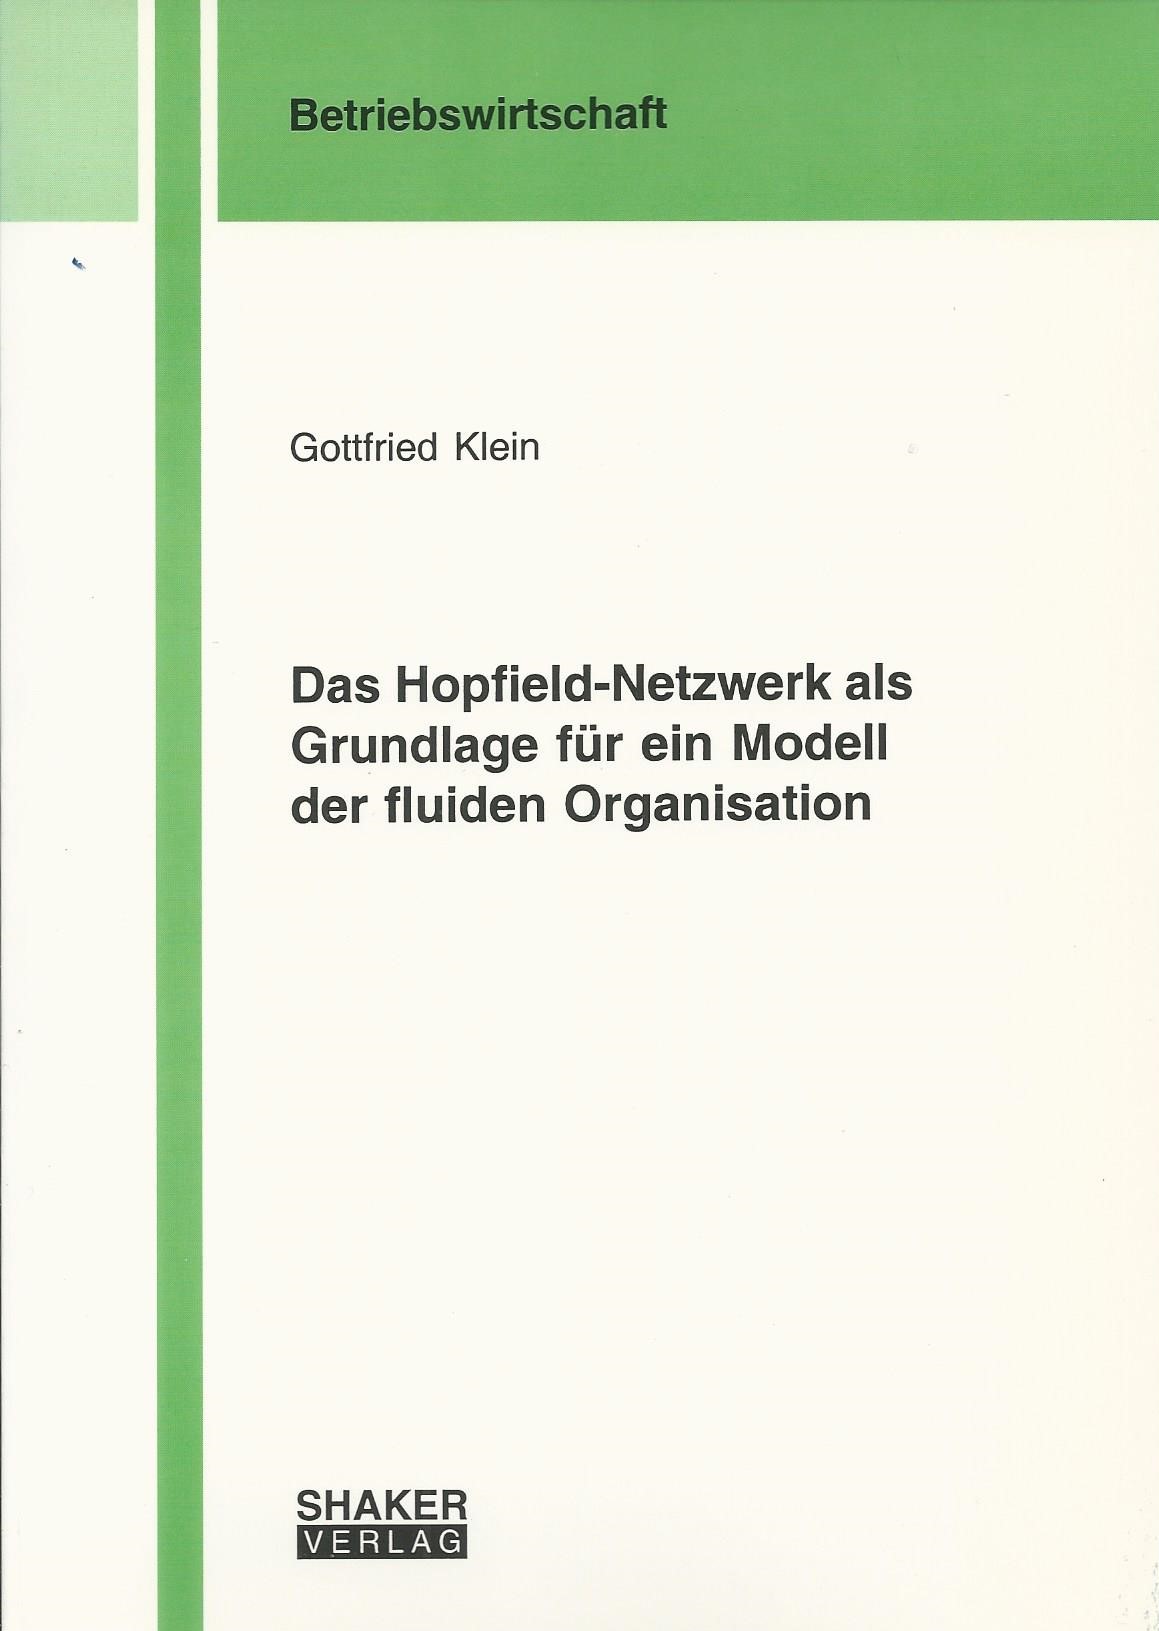 Das Hopfield-Netzwerk